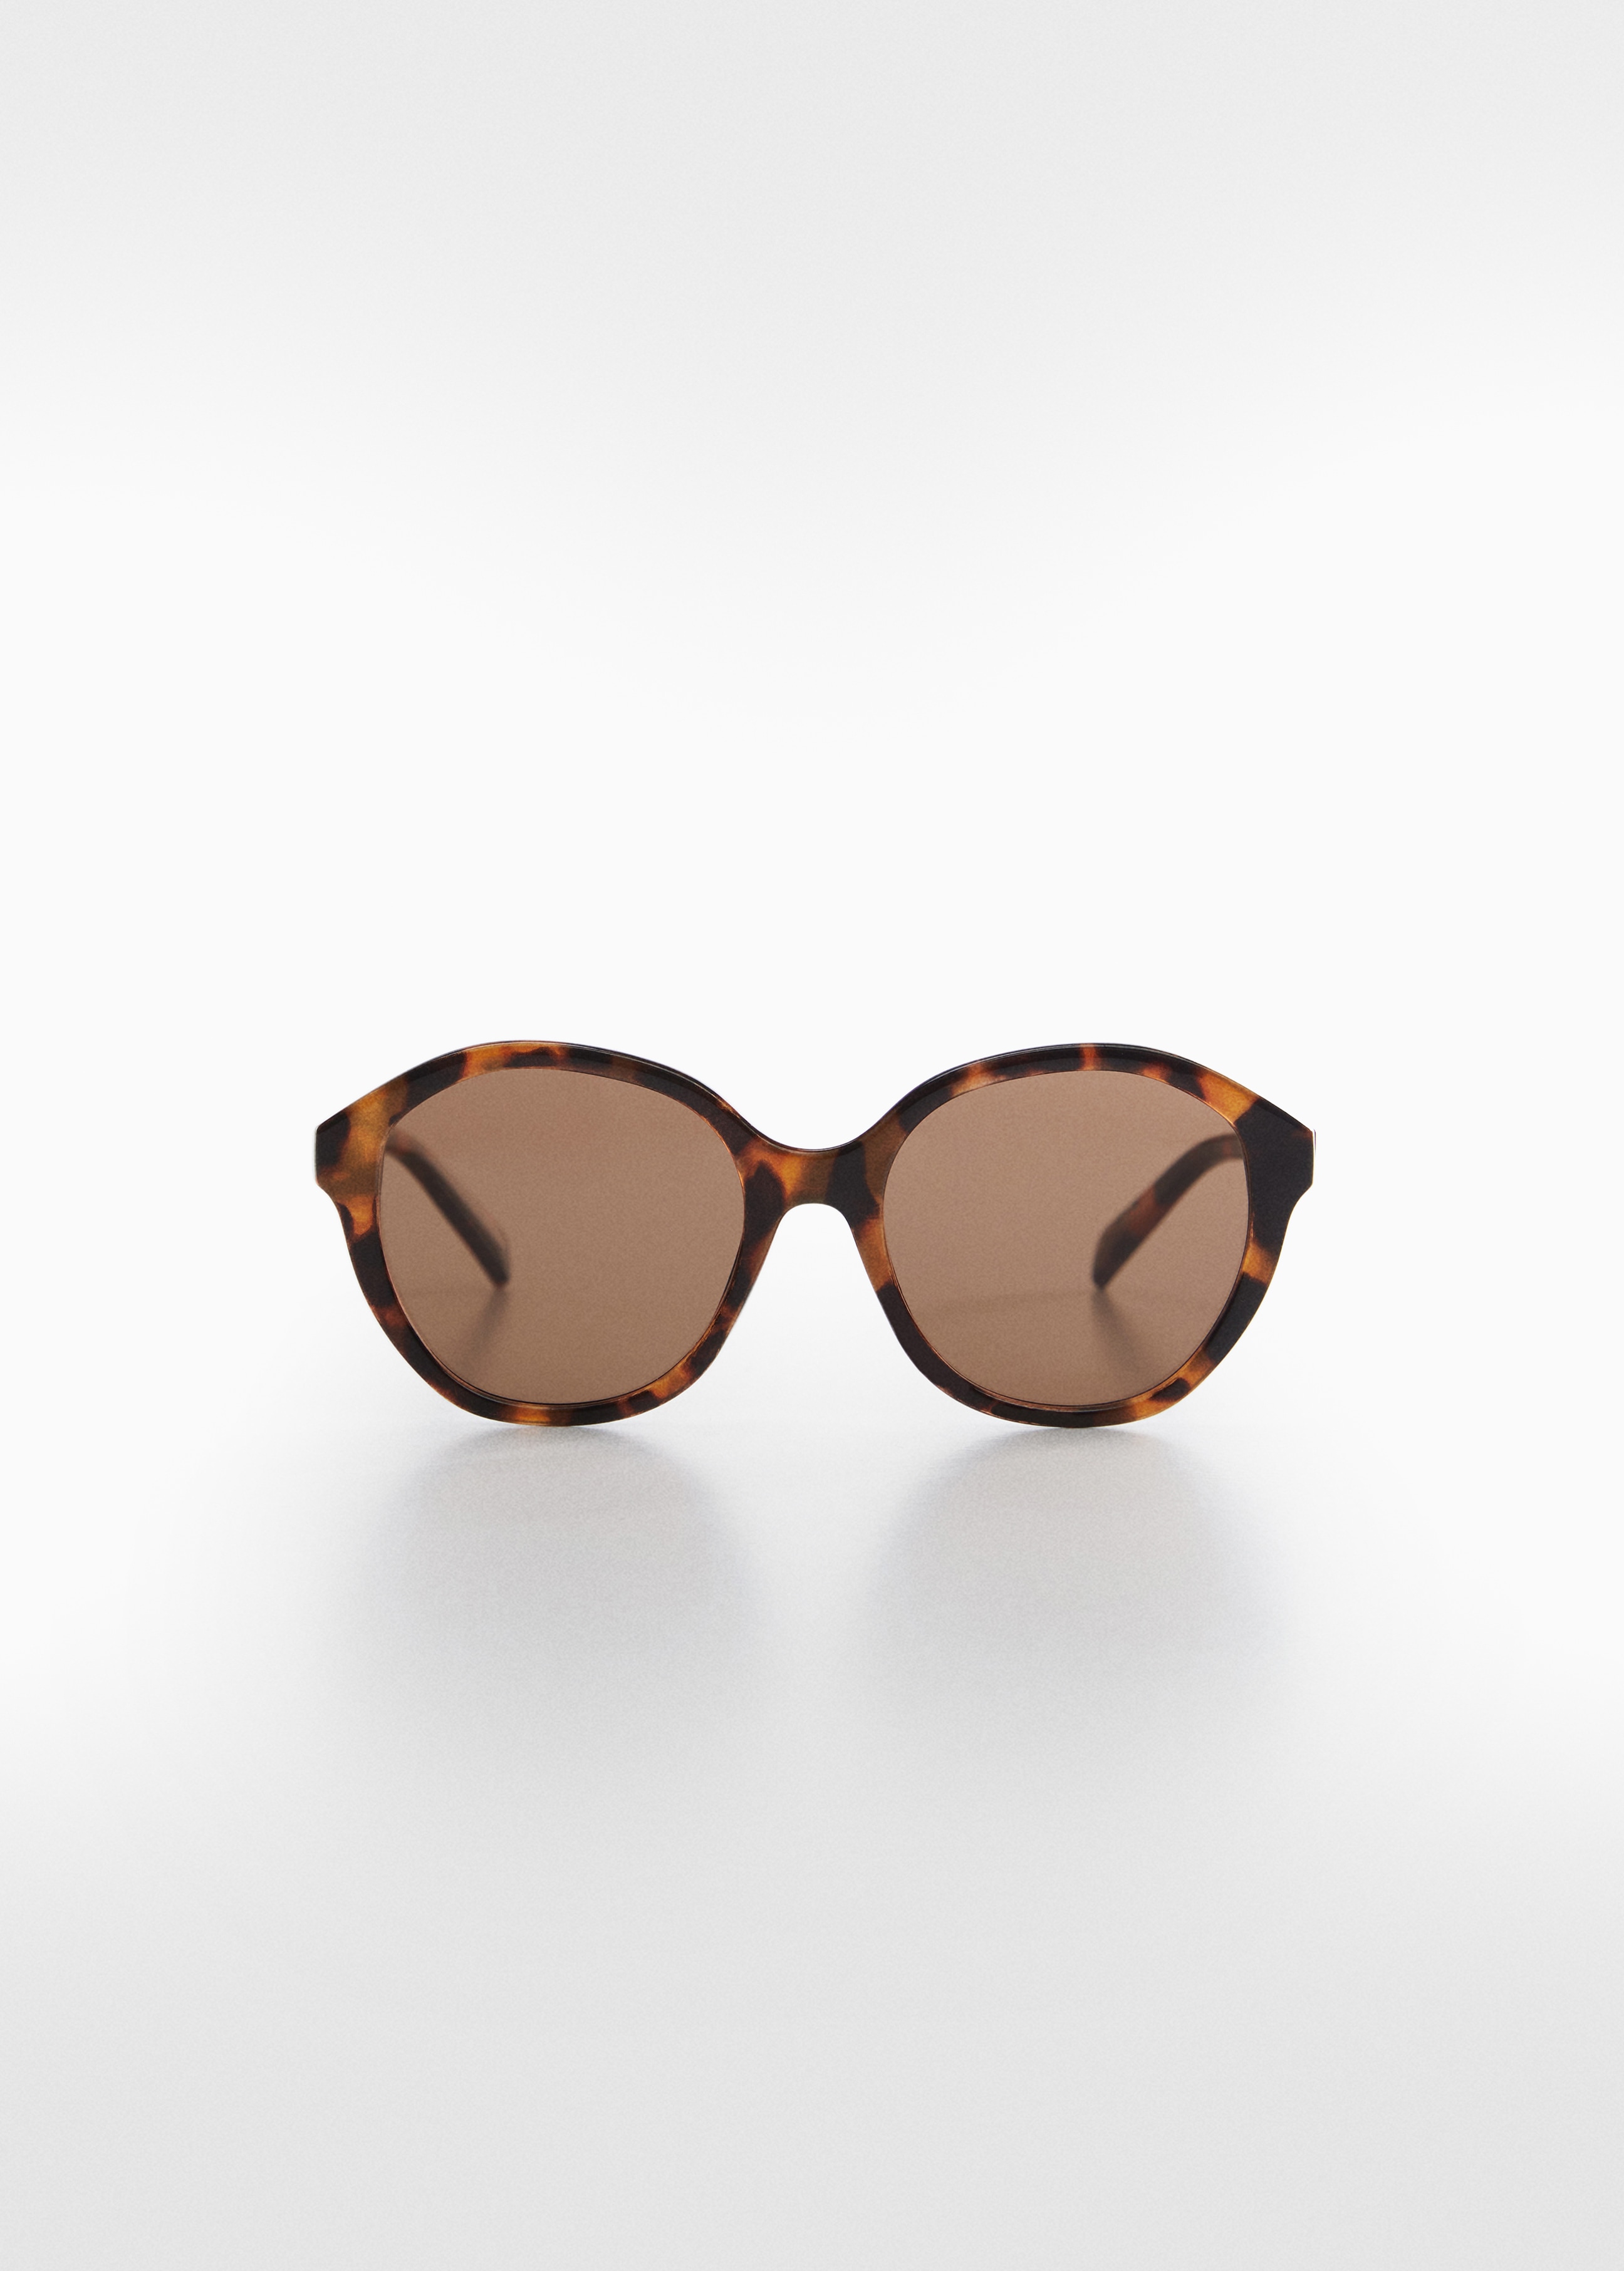 Okrugle sunčane naočale s okvirom od kornjačevine - Artikl bez modela